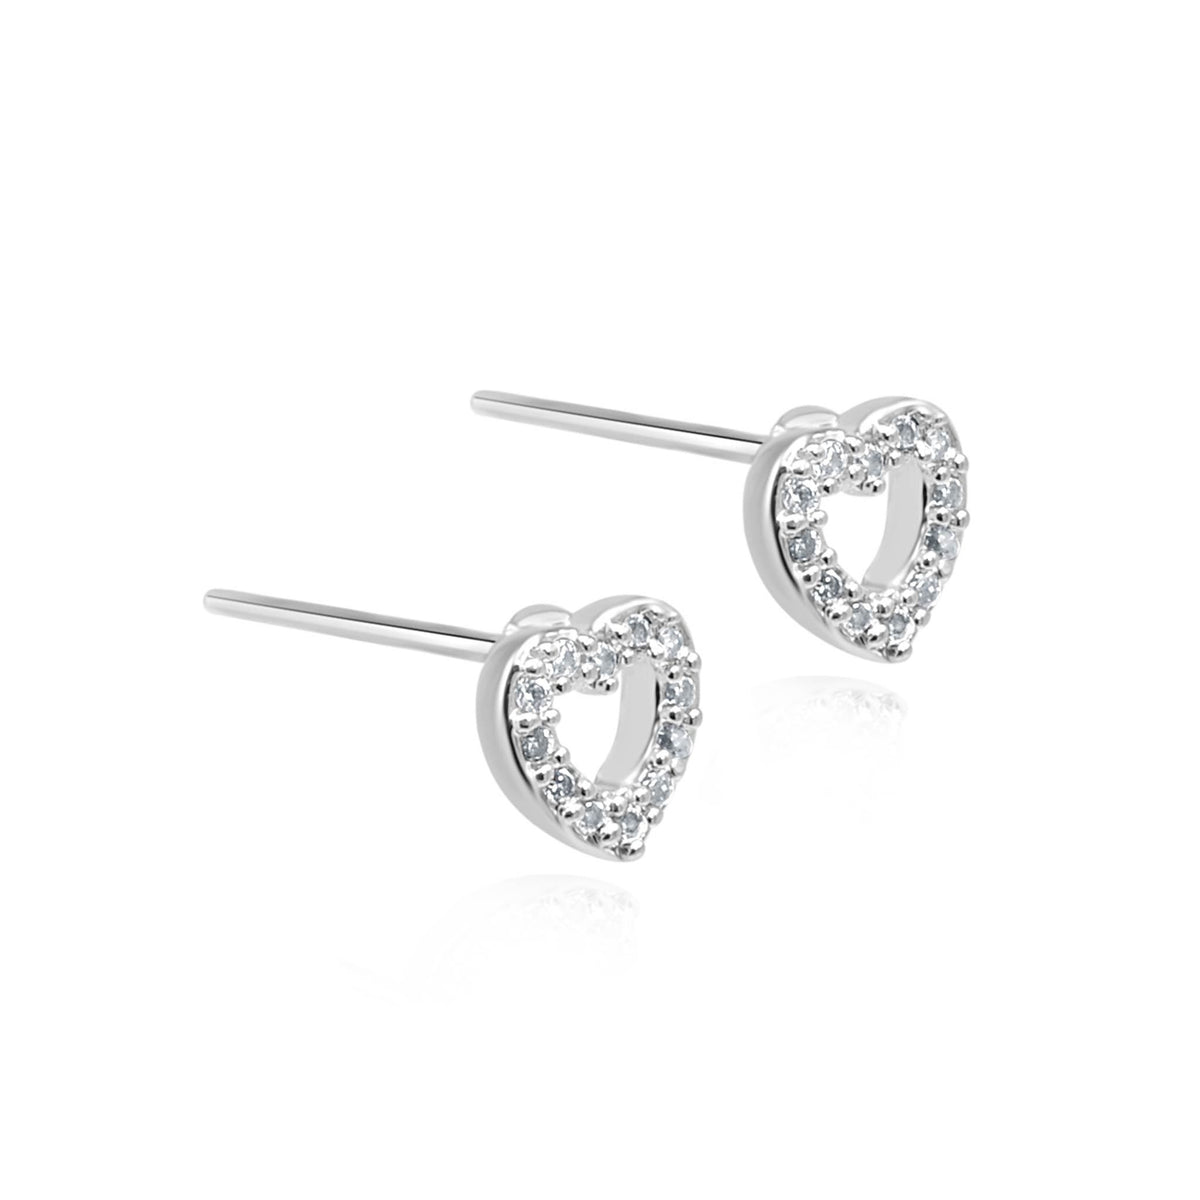 Silver open heart earrings | Number 1 for earrings | Demi & Co ...